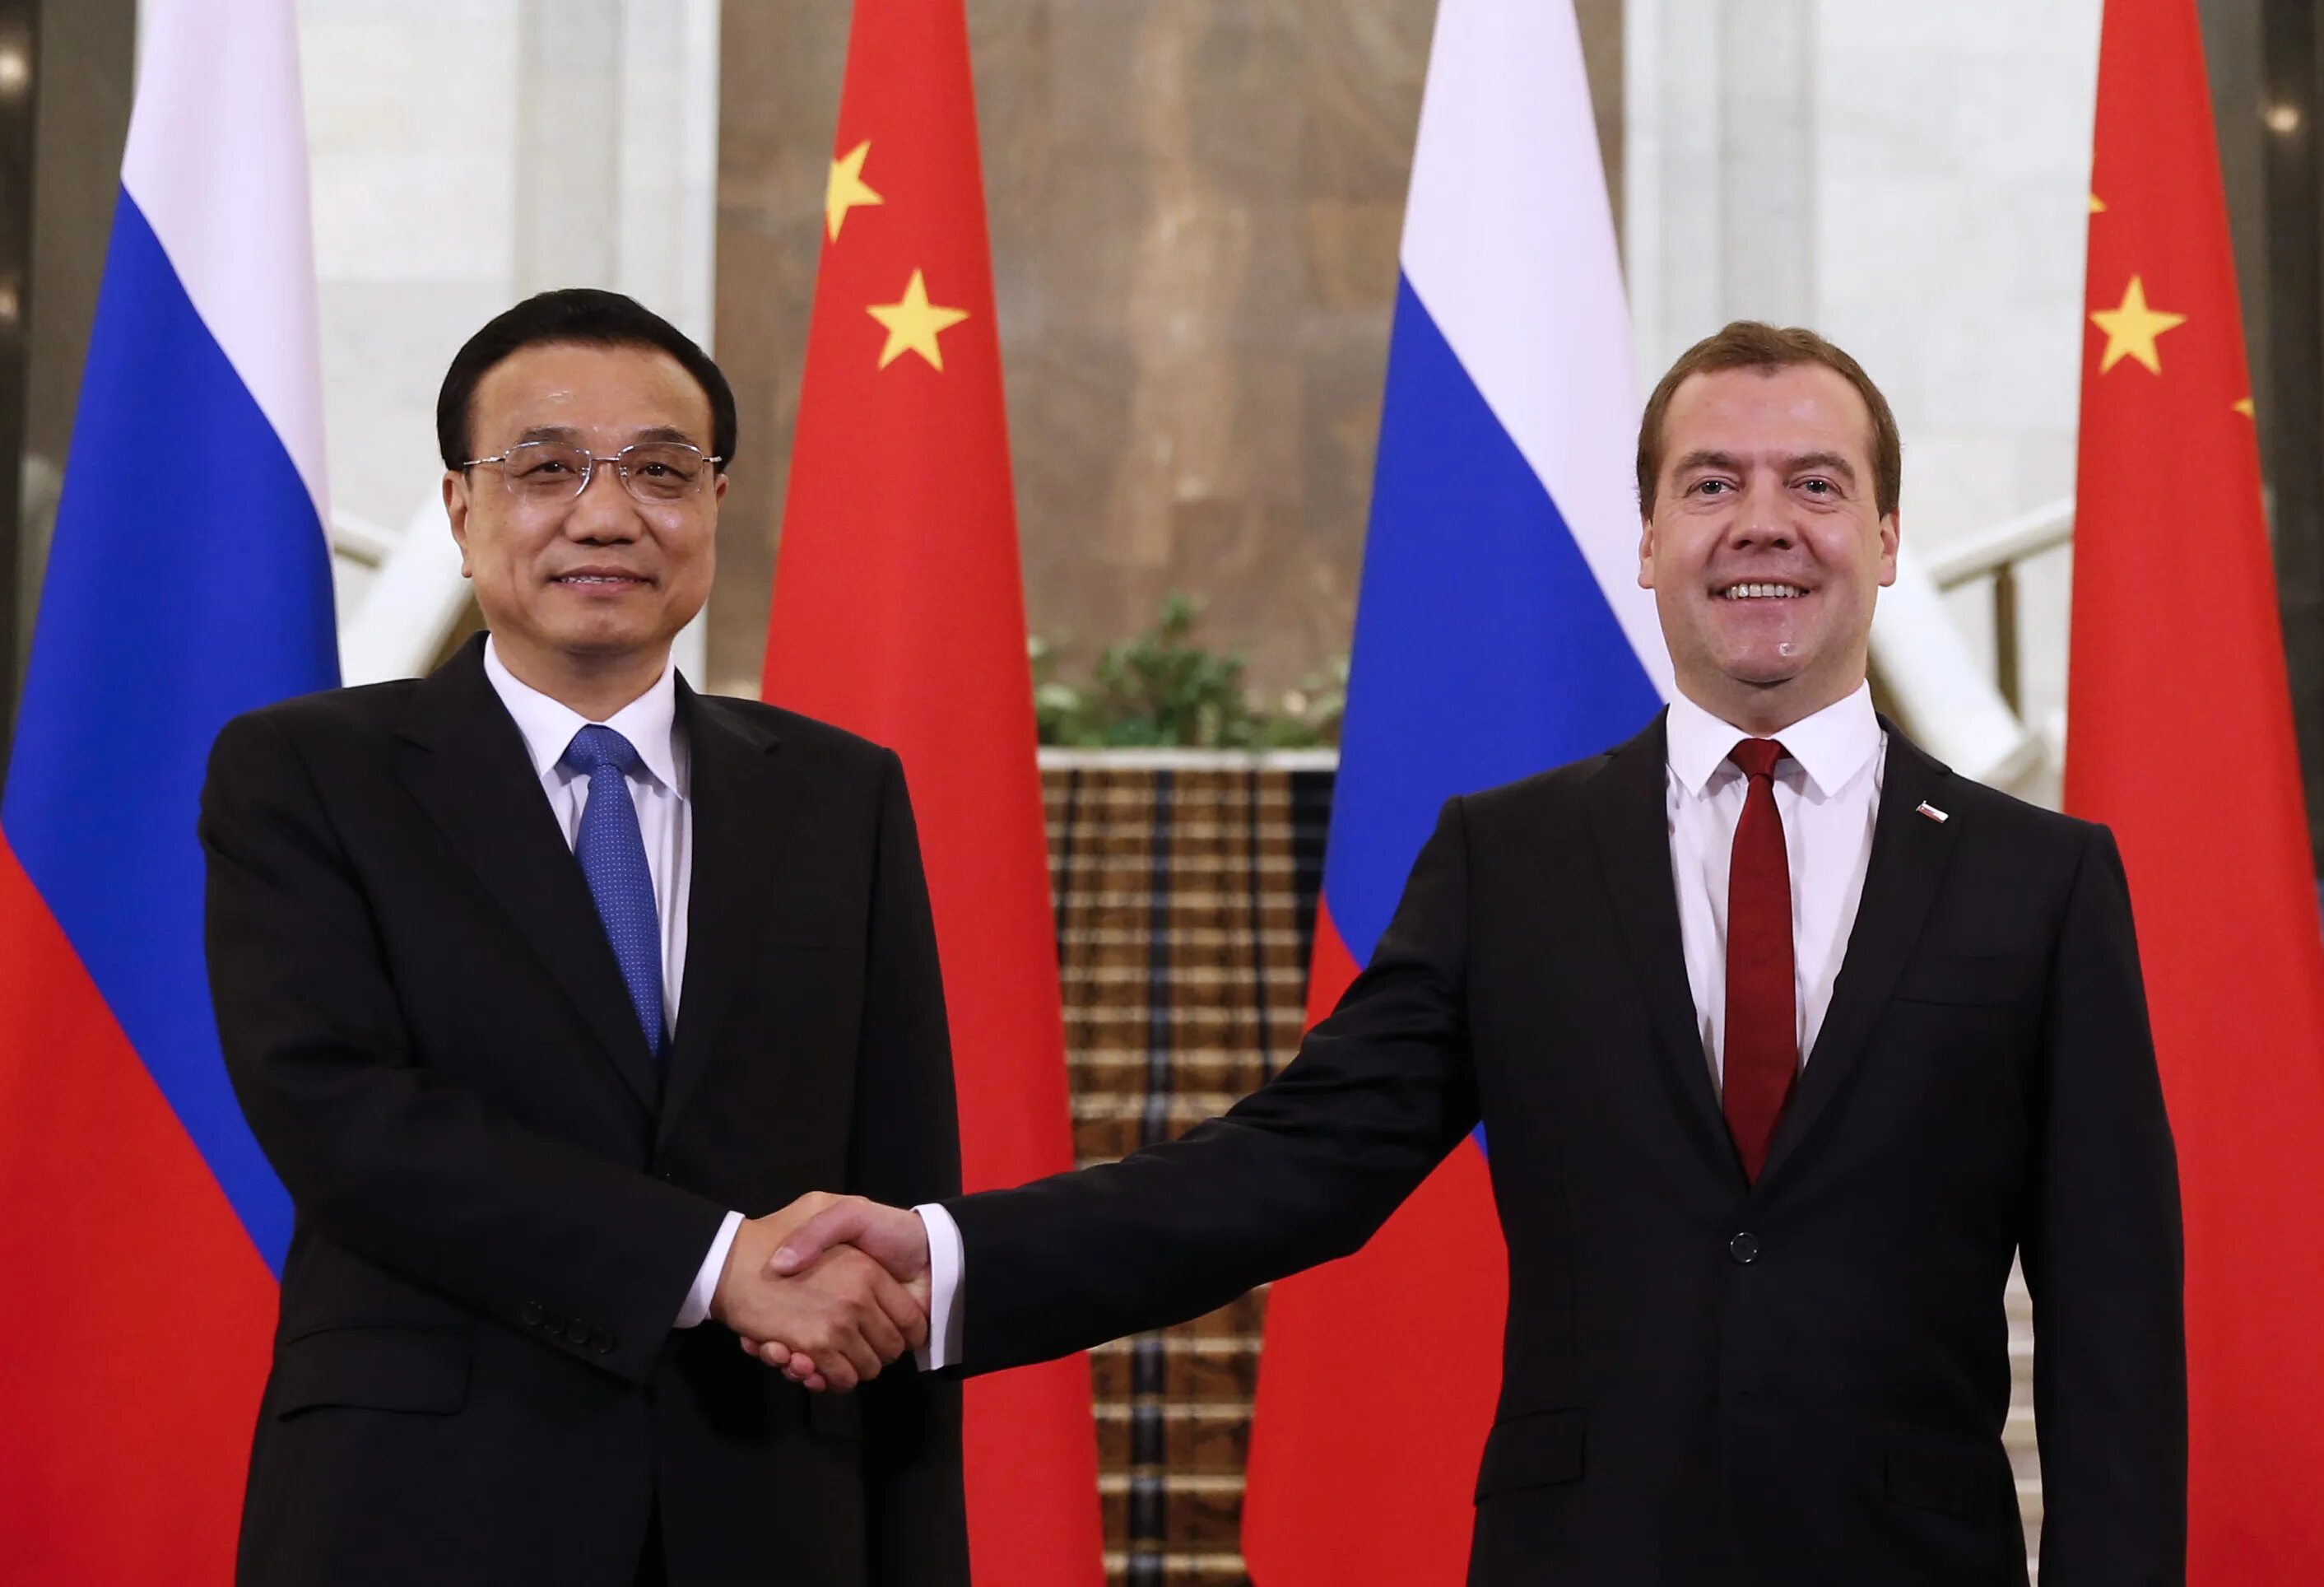 Ли Кэцян и си Цзиньпин. Медведев и си Цзиньпин. Си Цзиньпин в 2014. Китайский председатель си Цзиньпин.